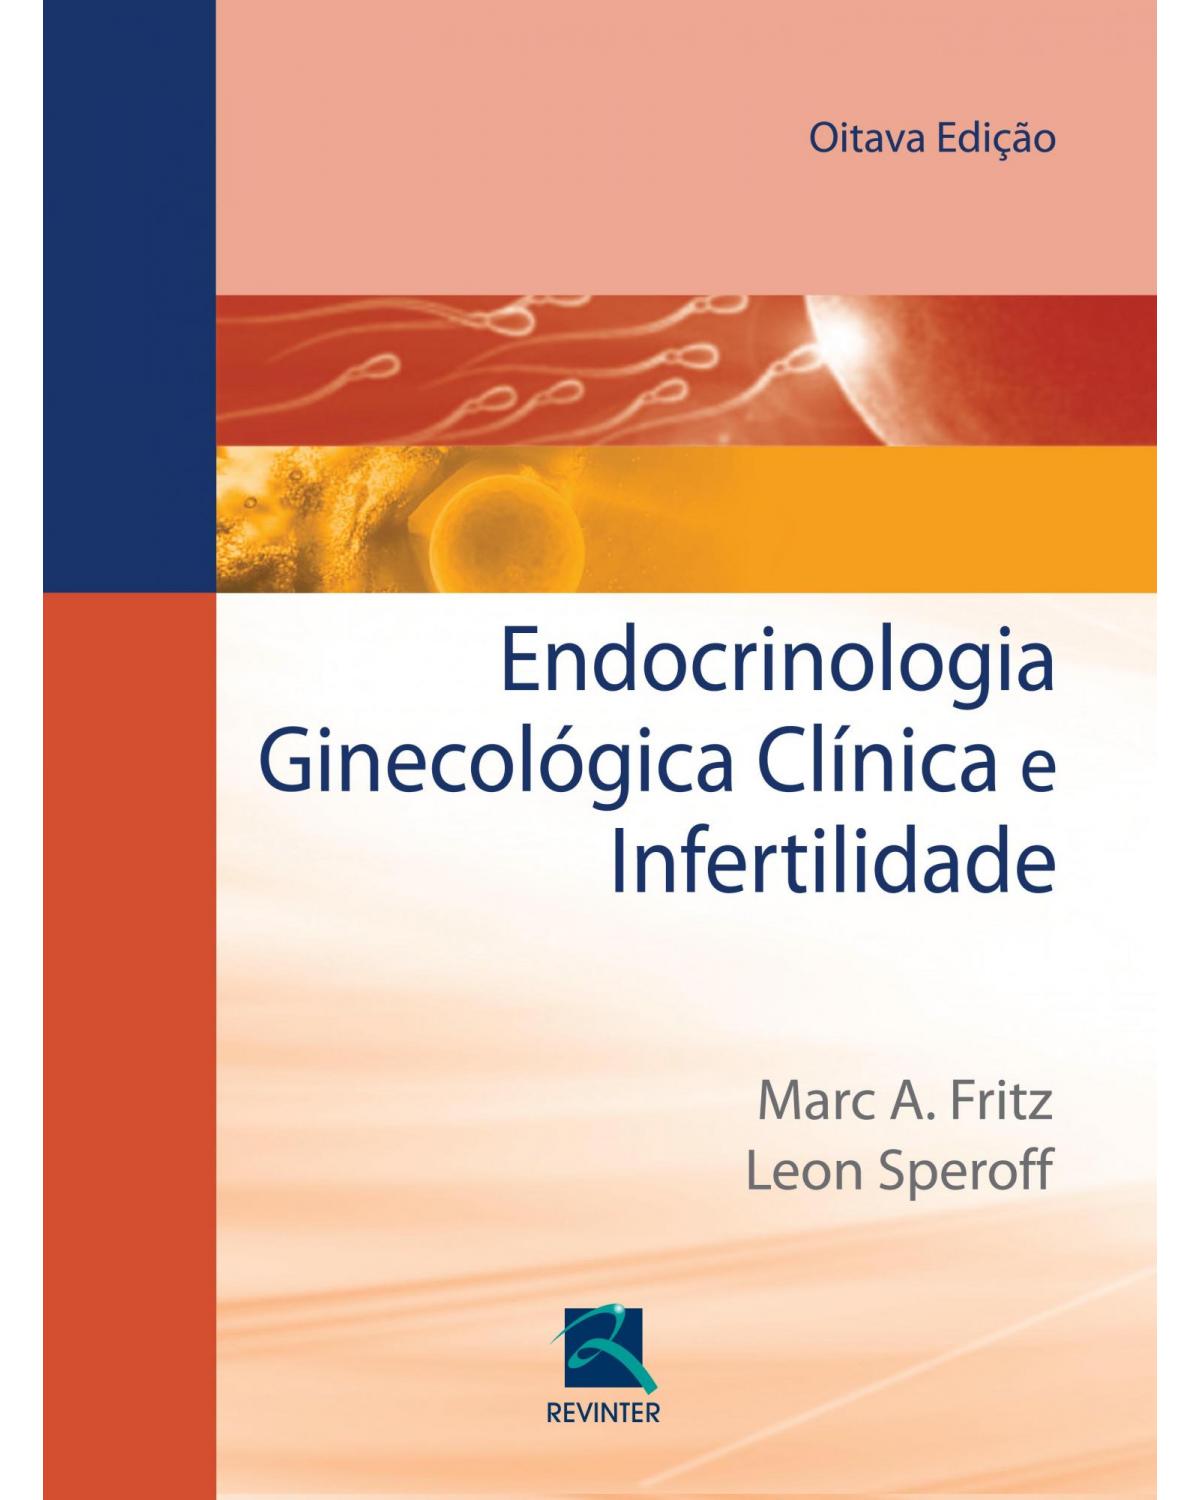 Endocrinologia ginecológica clínica e infertilidade - 8ª Edição | 2014